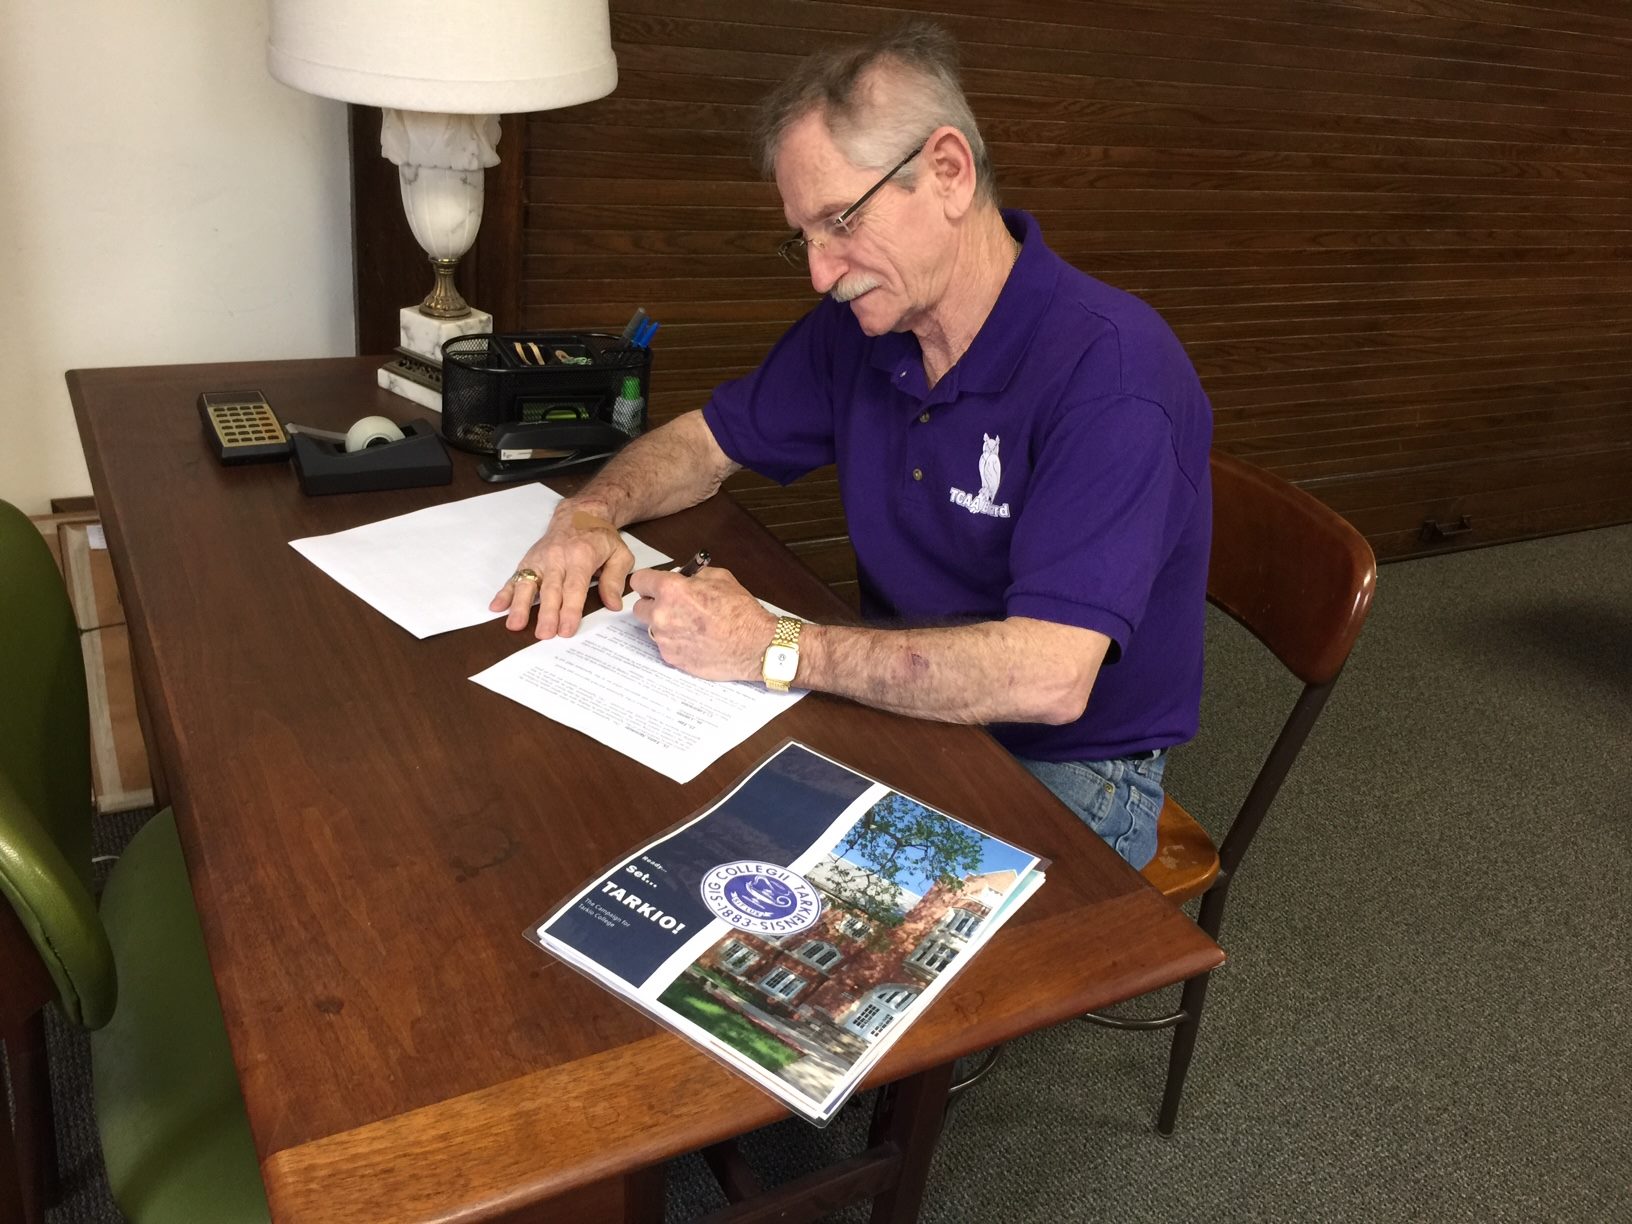 Wayne Gelston signing paperwork